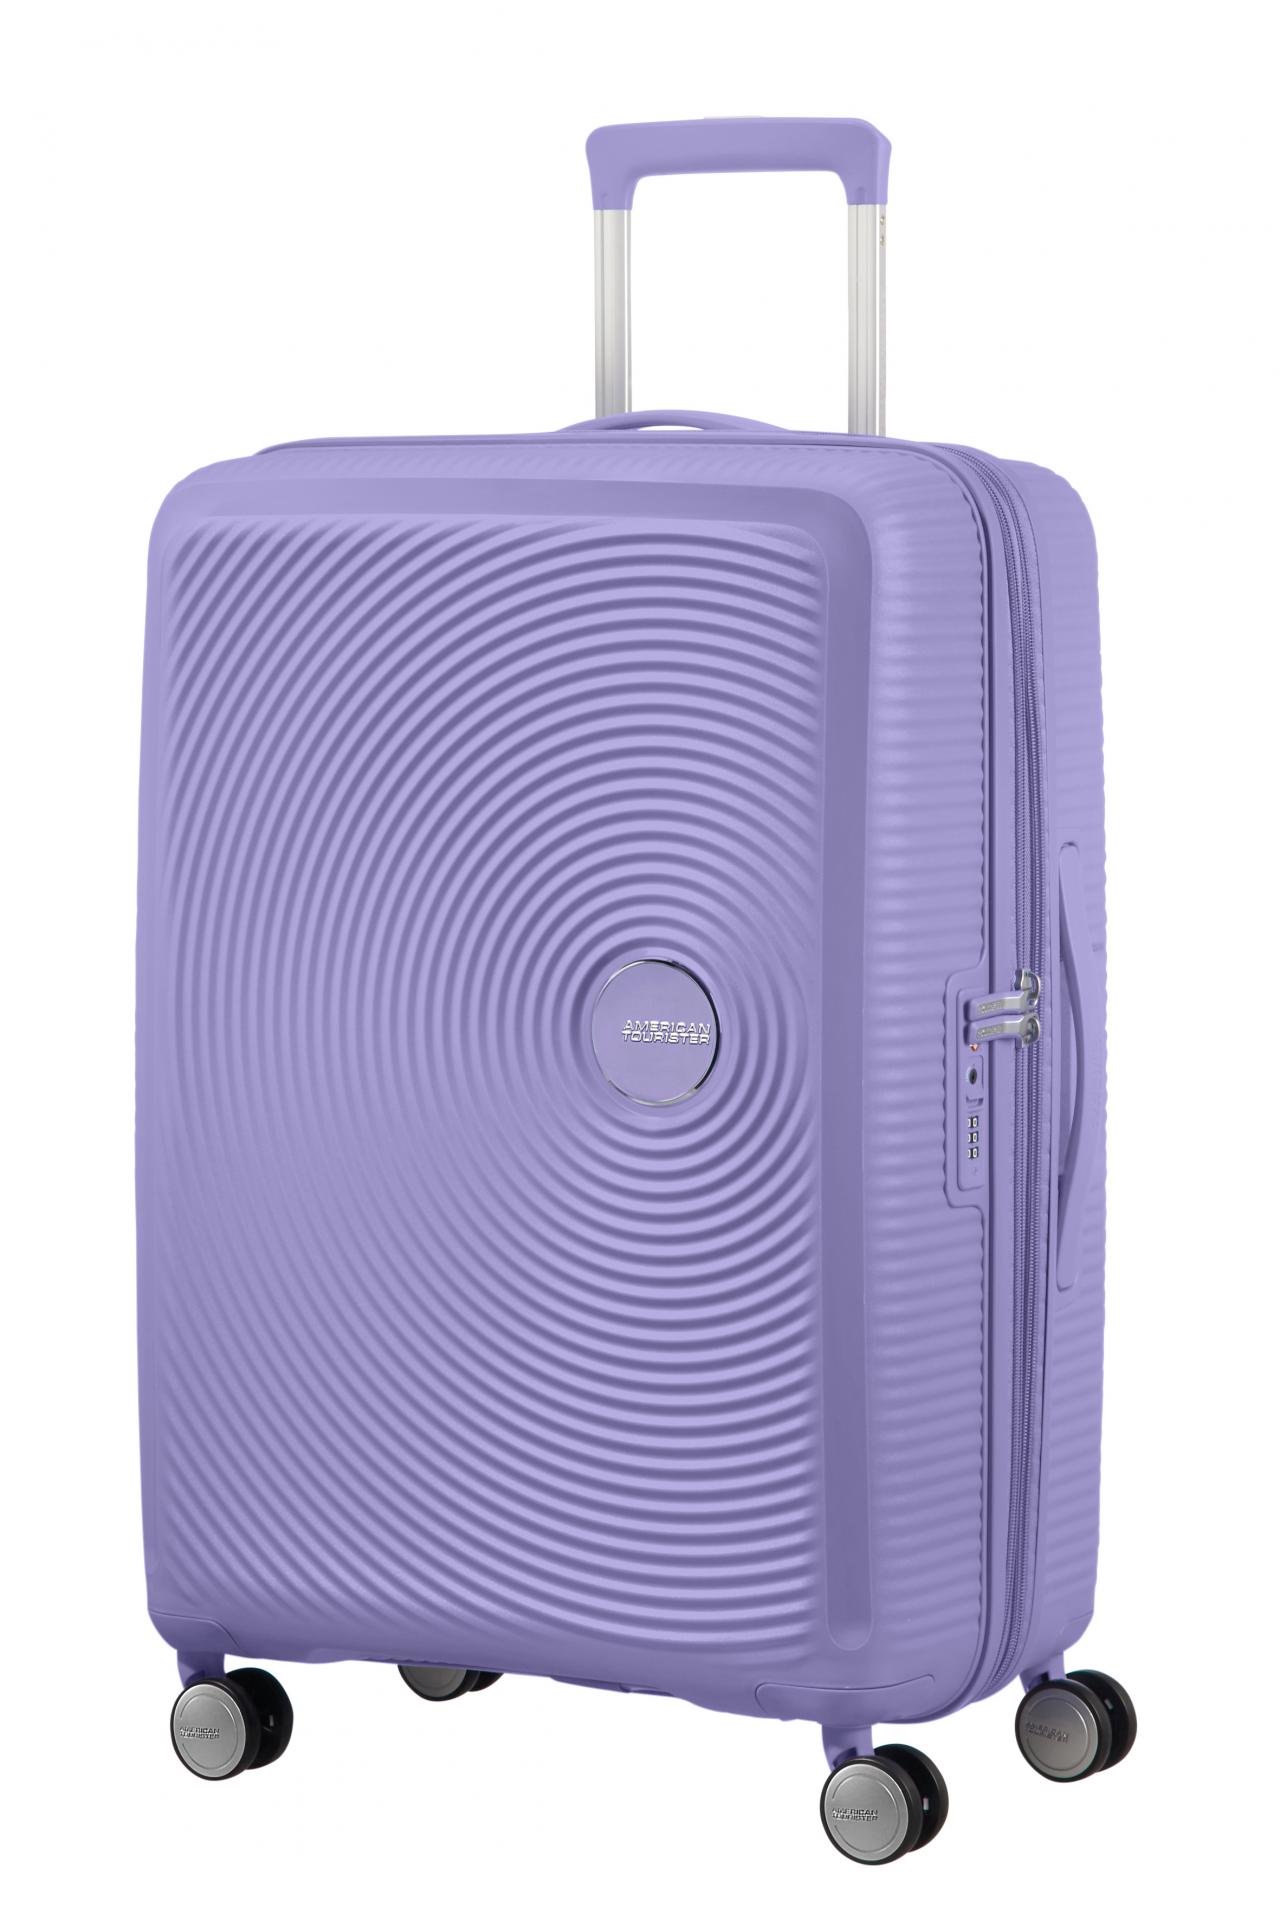 Soundbox maleta mediana exp. 67cm lavender 88473 1491